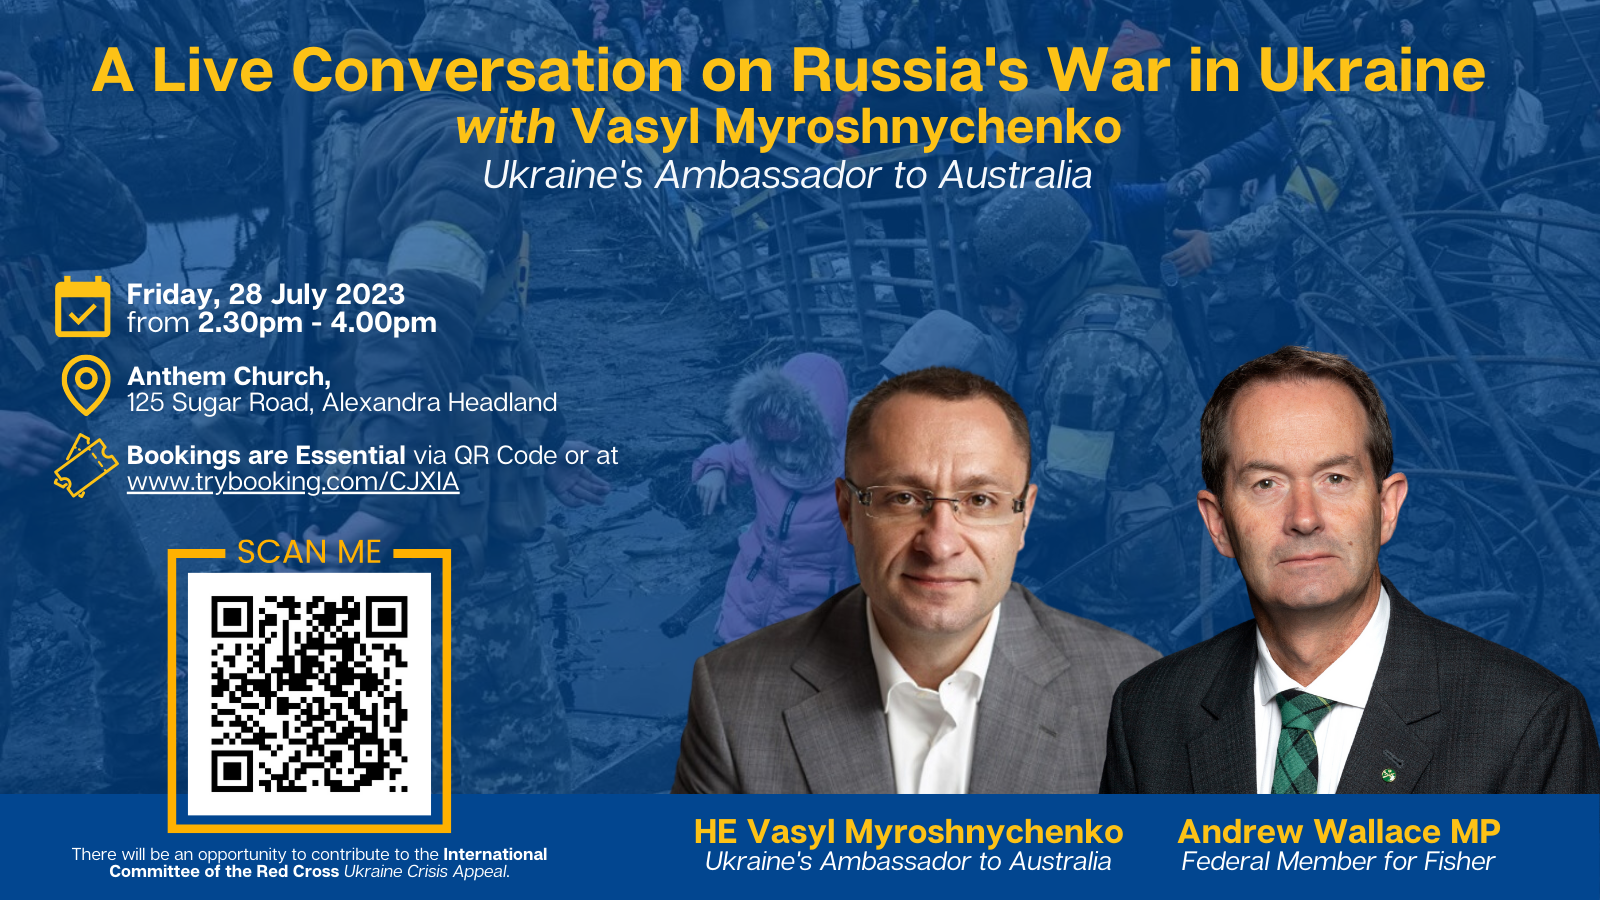 Vasyl Myroshnychenko, a Live Conversation on Russia's War in Ukraine